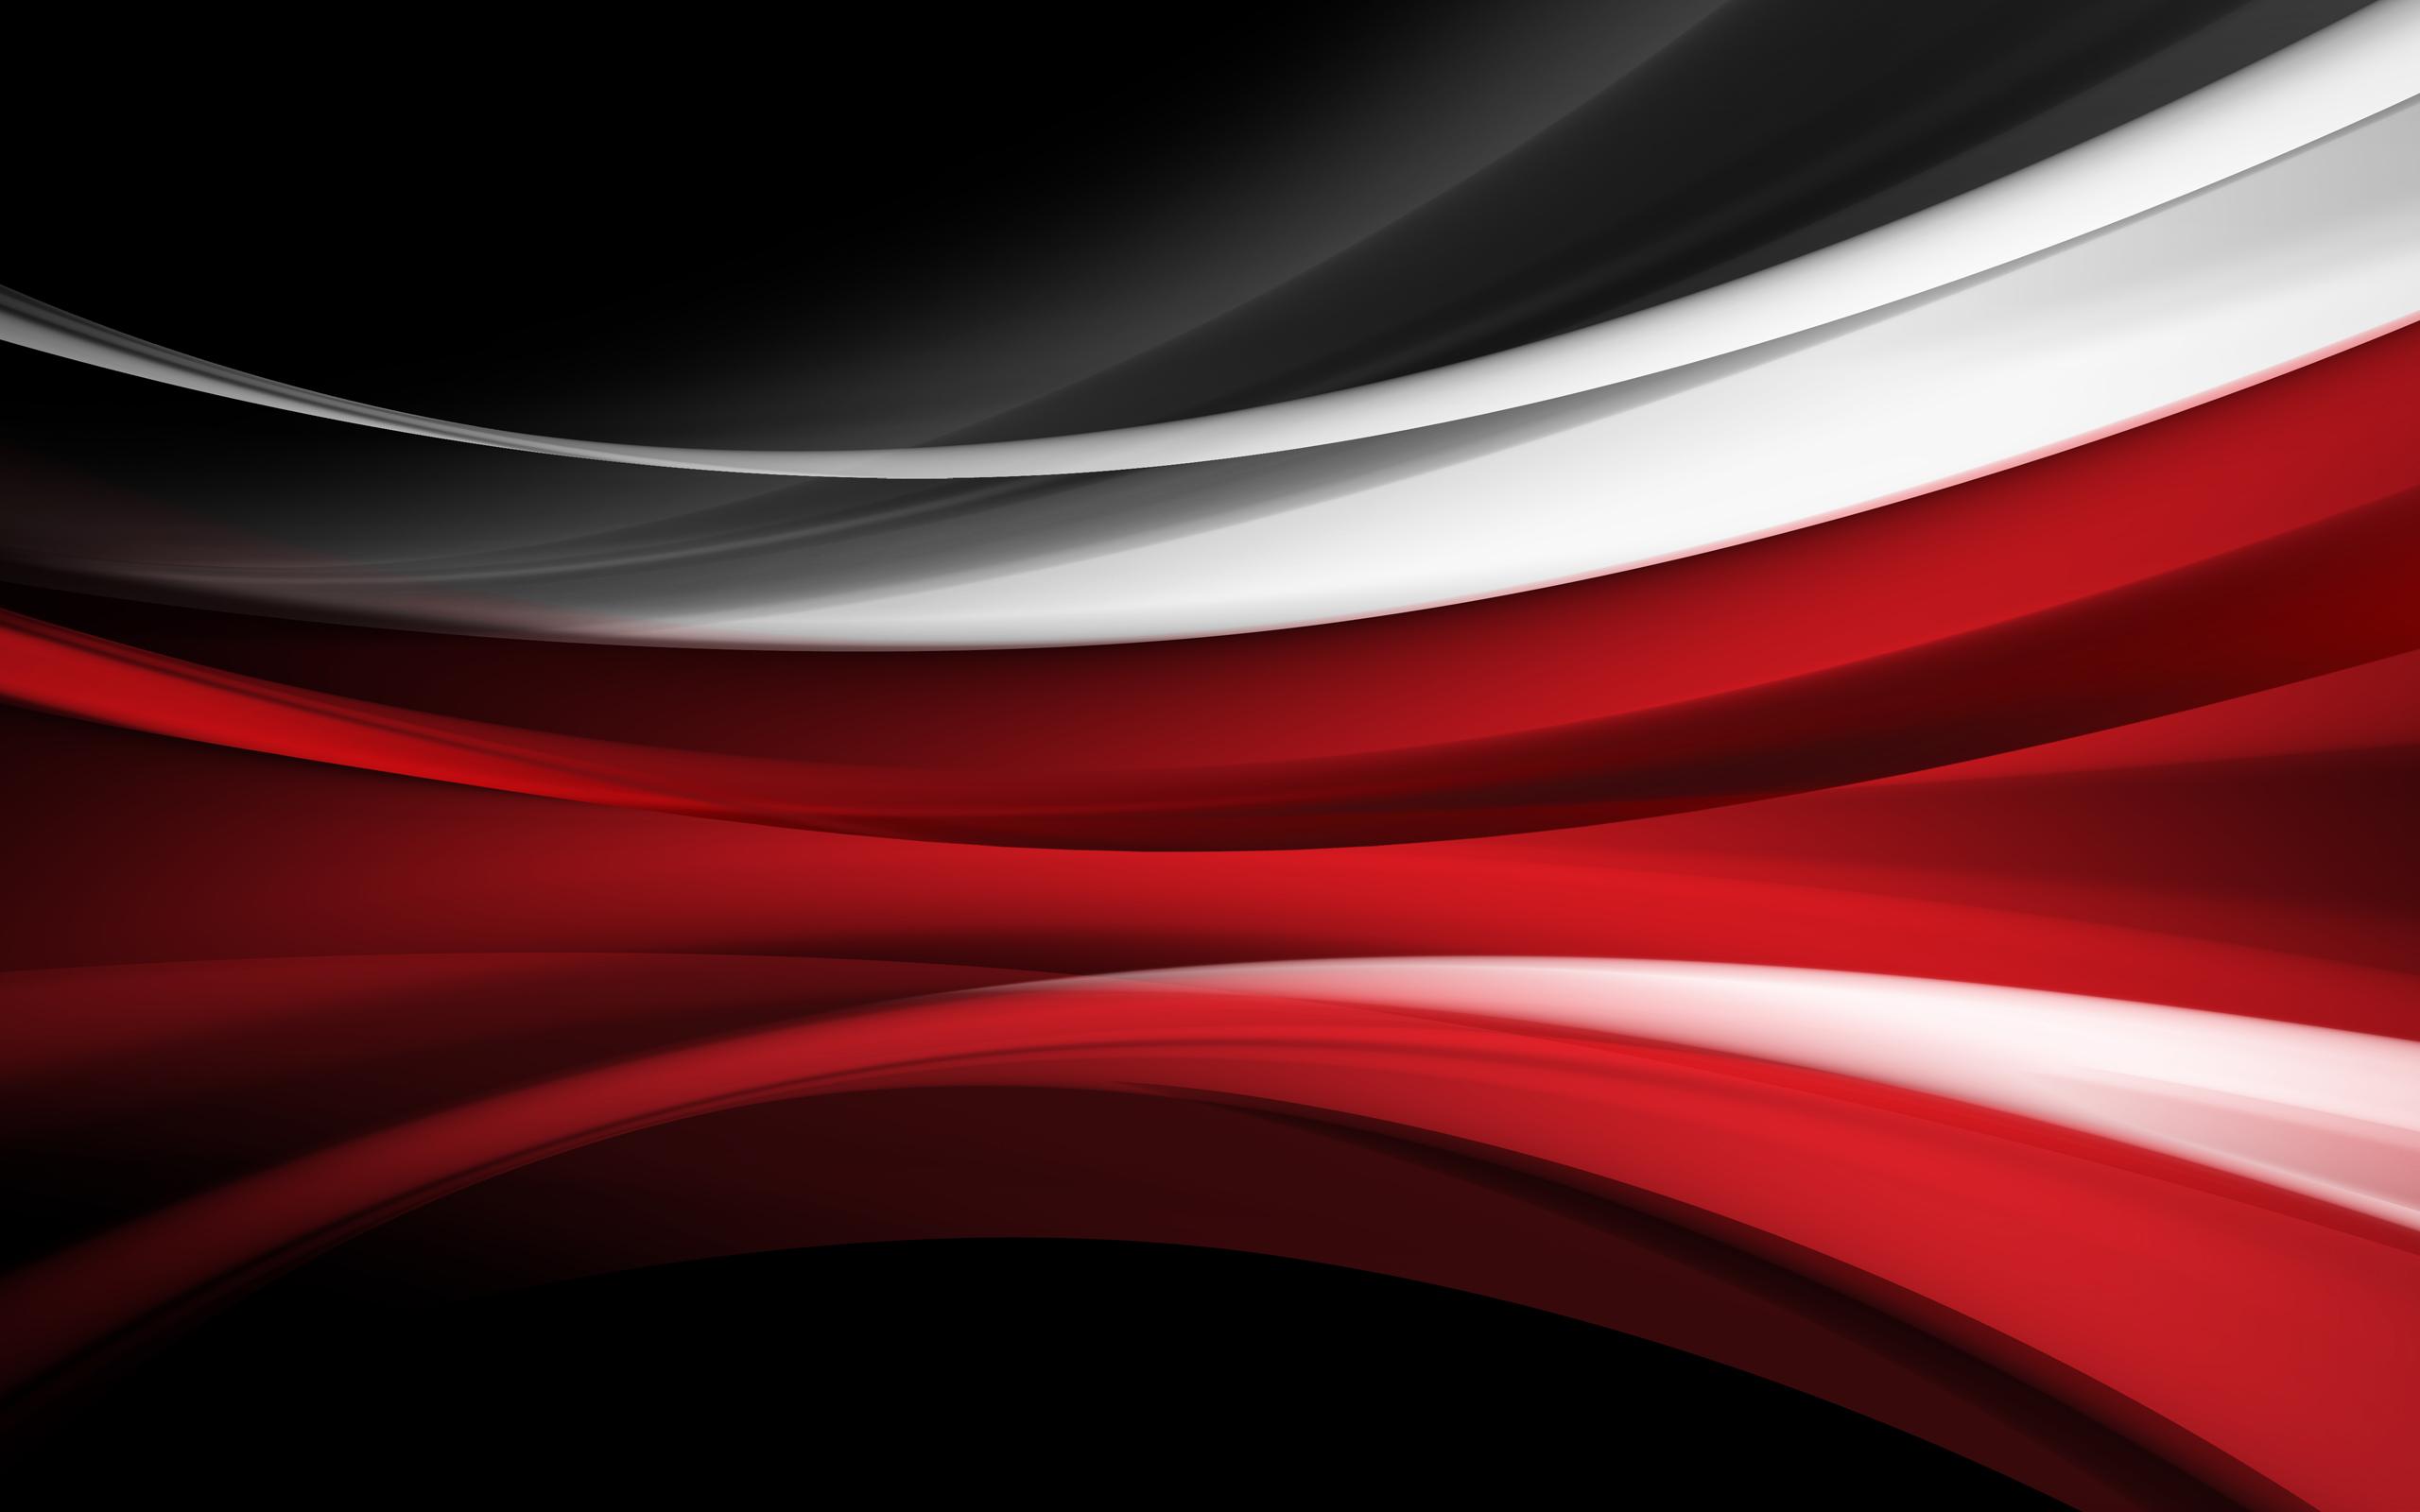 Download Gambar Black and Red Hd Wallpapers for Desktop terbaru 2020